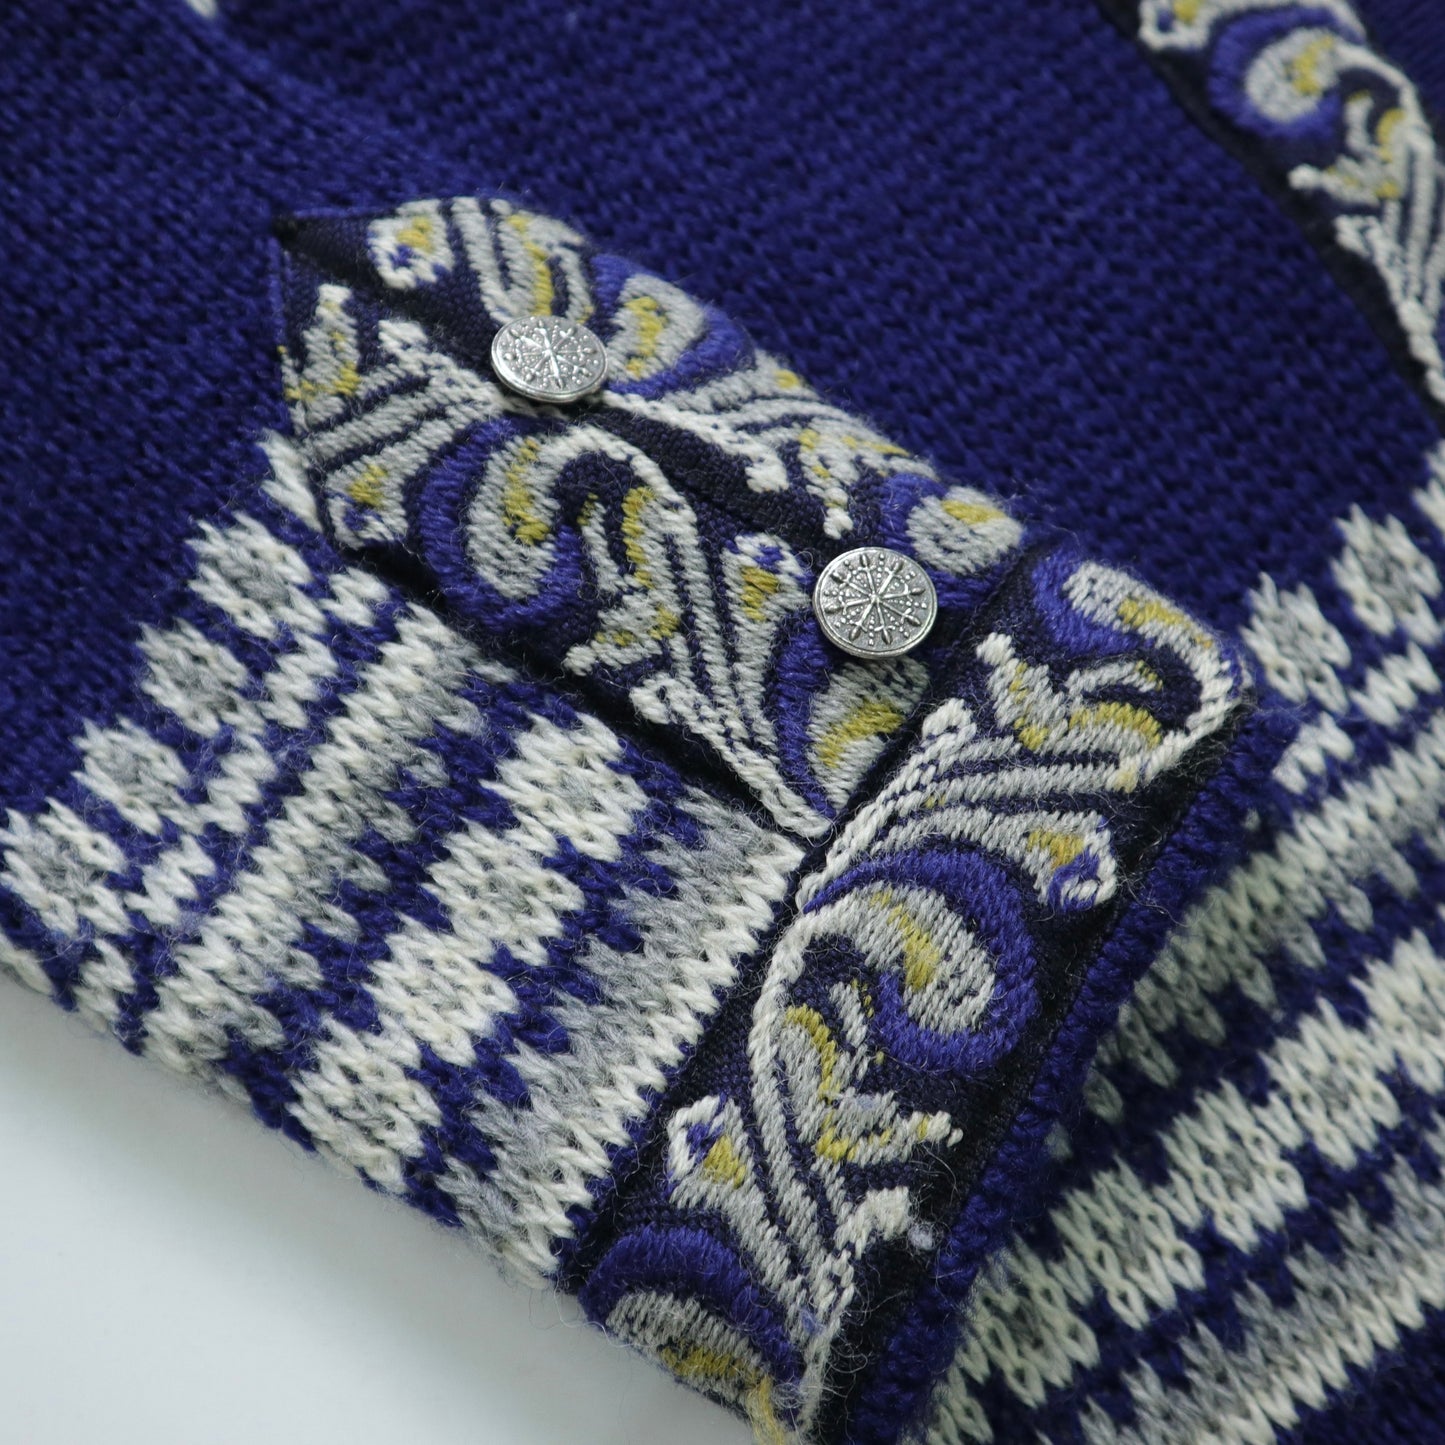 Nordstrikk Royal Blue Norwegian Wool Clothing Carved Metal Buckle Made in Norway